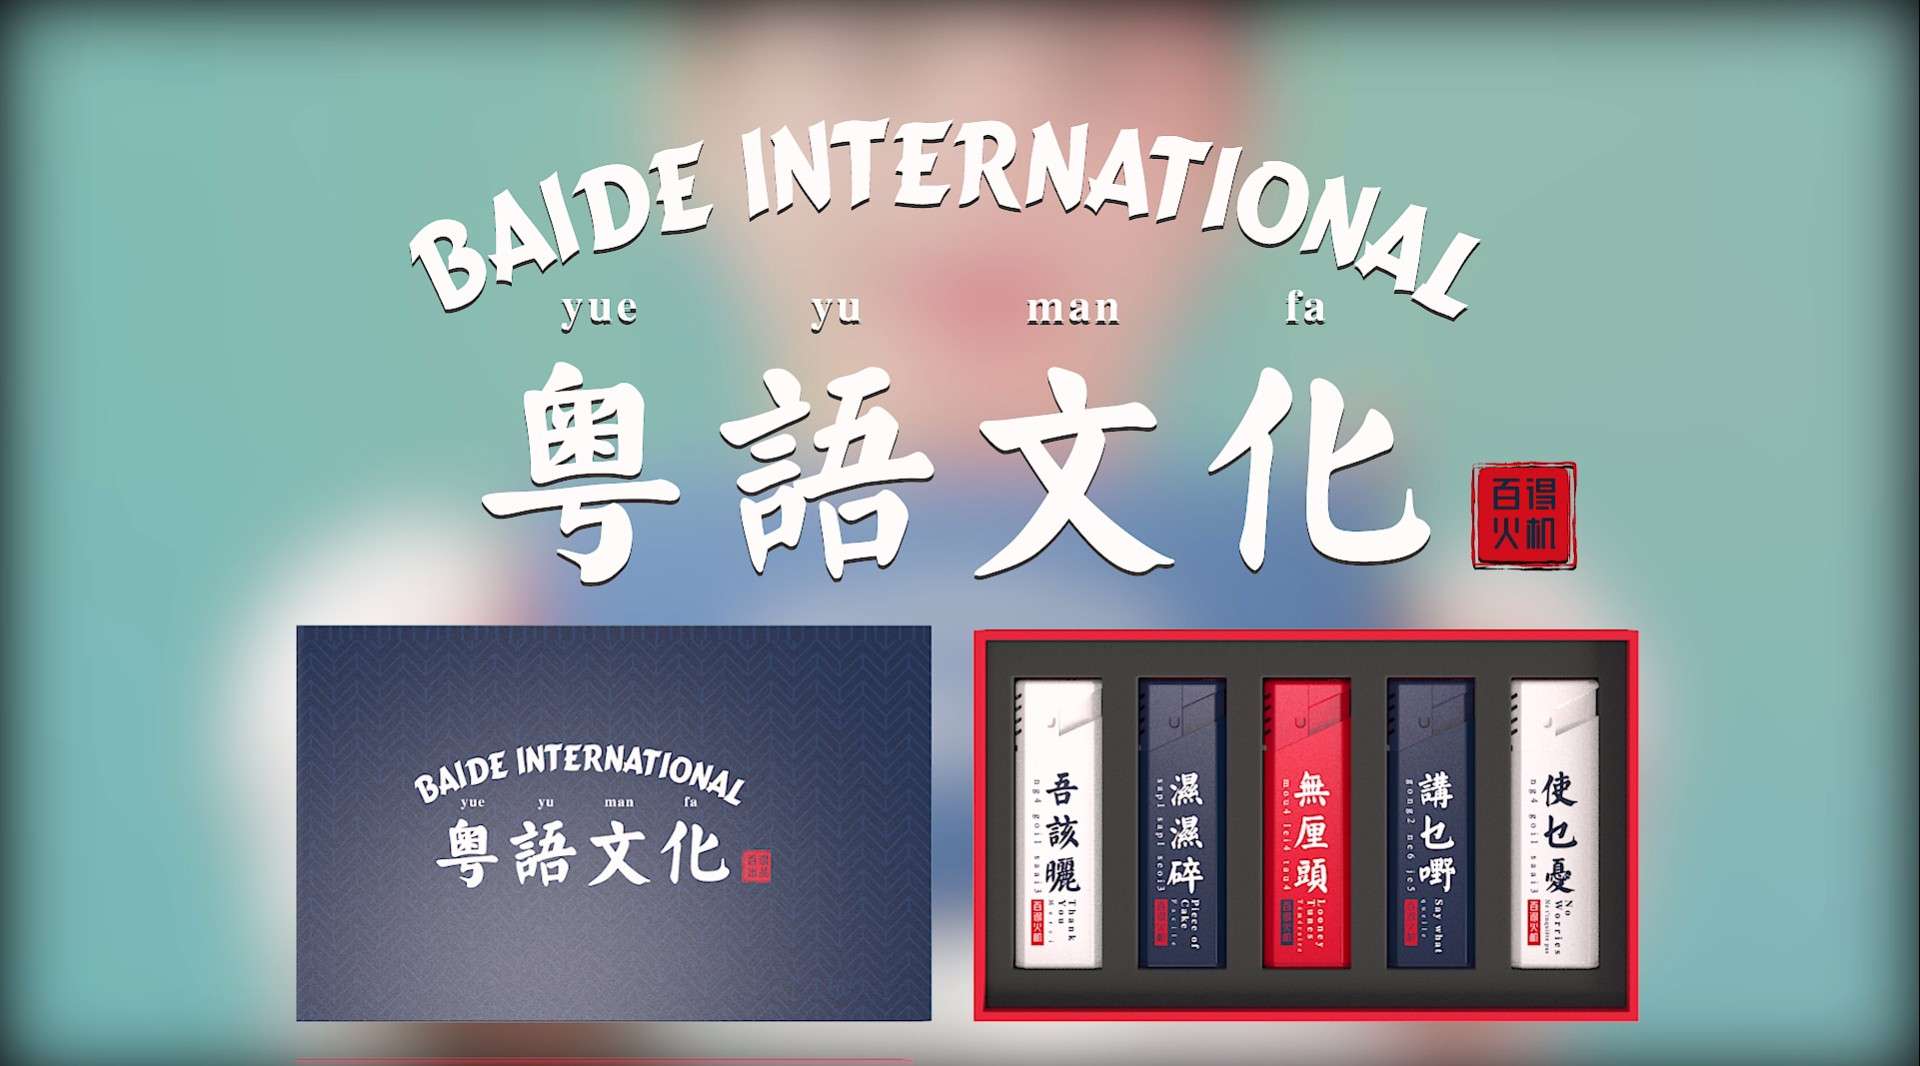 百得火机-粤语文化系列宣传片